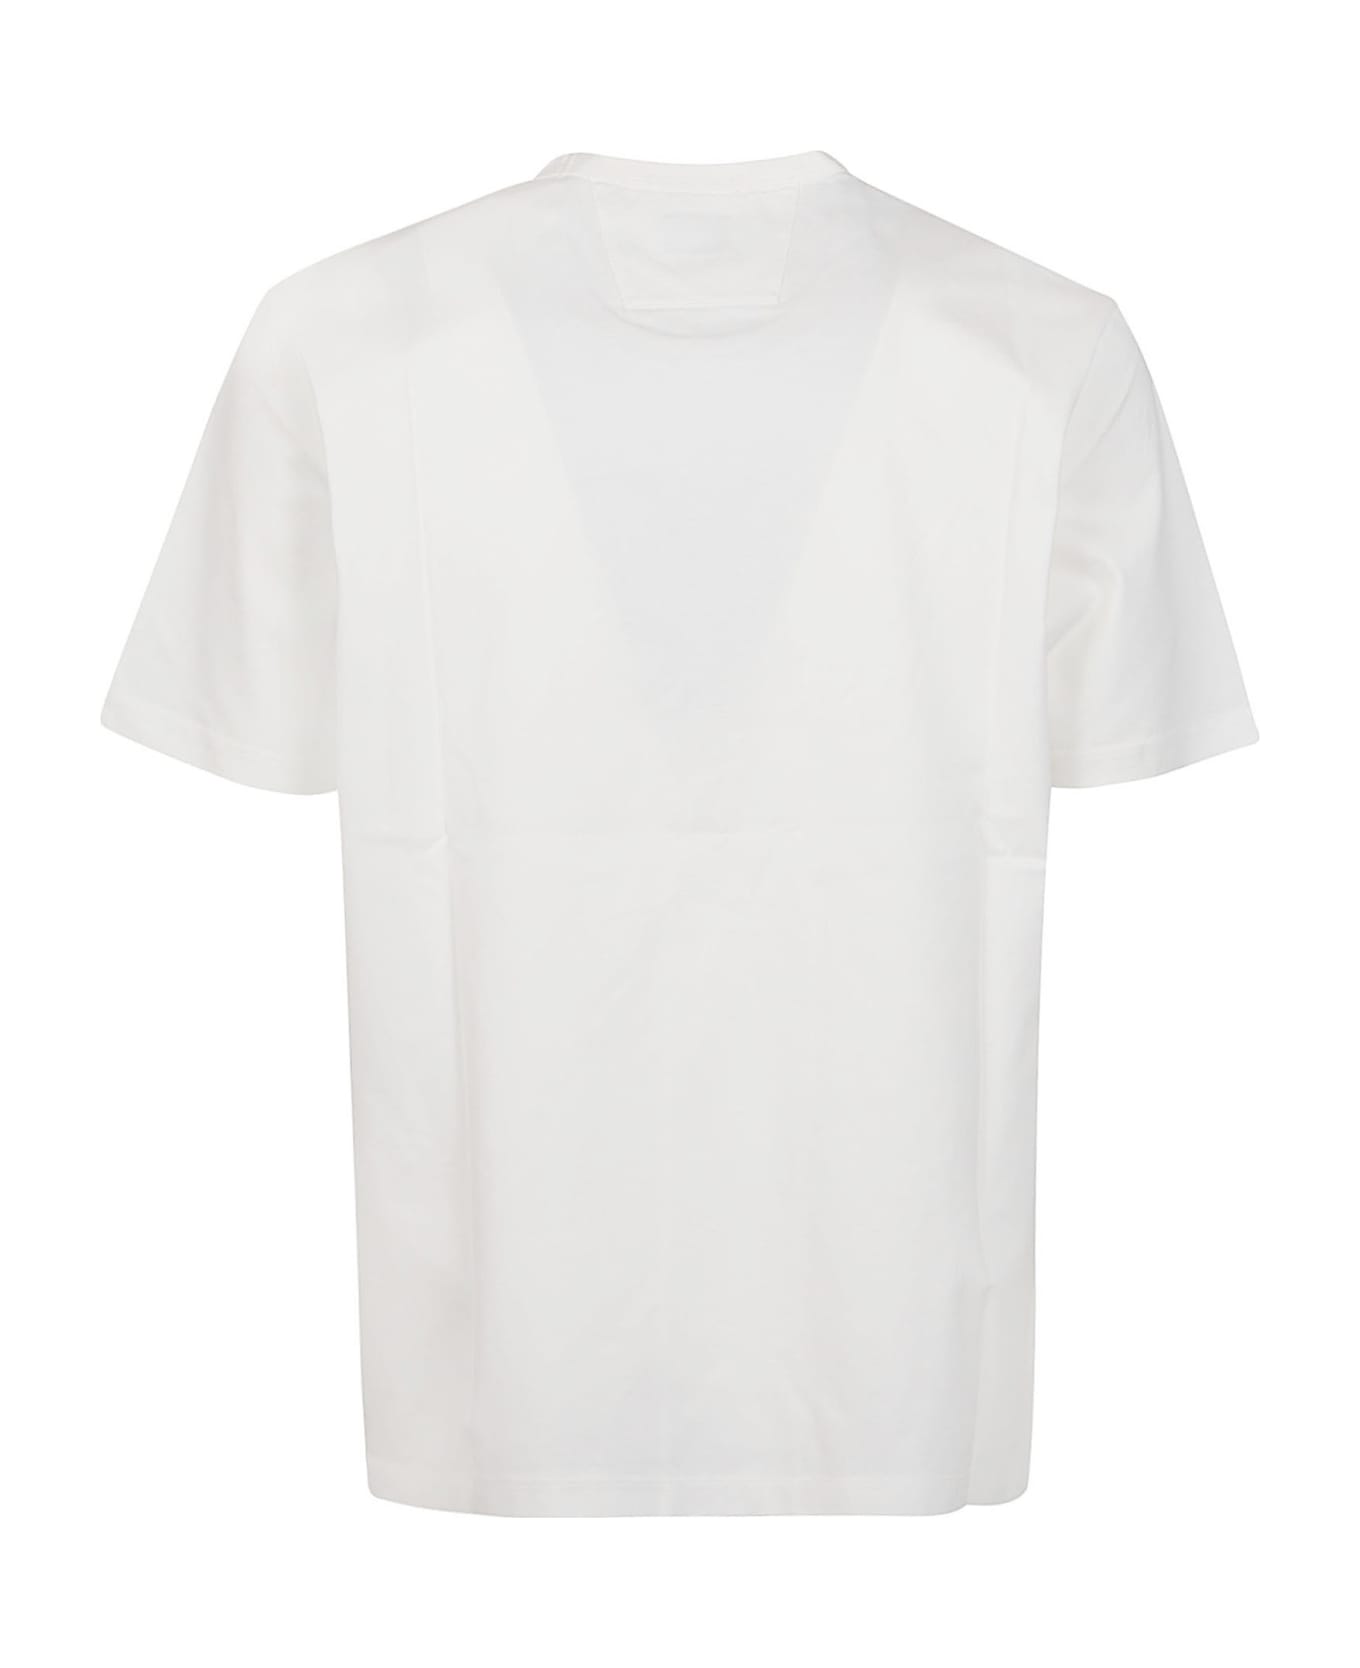 C.P. Company Metropolis Mercerized Jersey Logo Print T-shirt - White シャツ